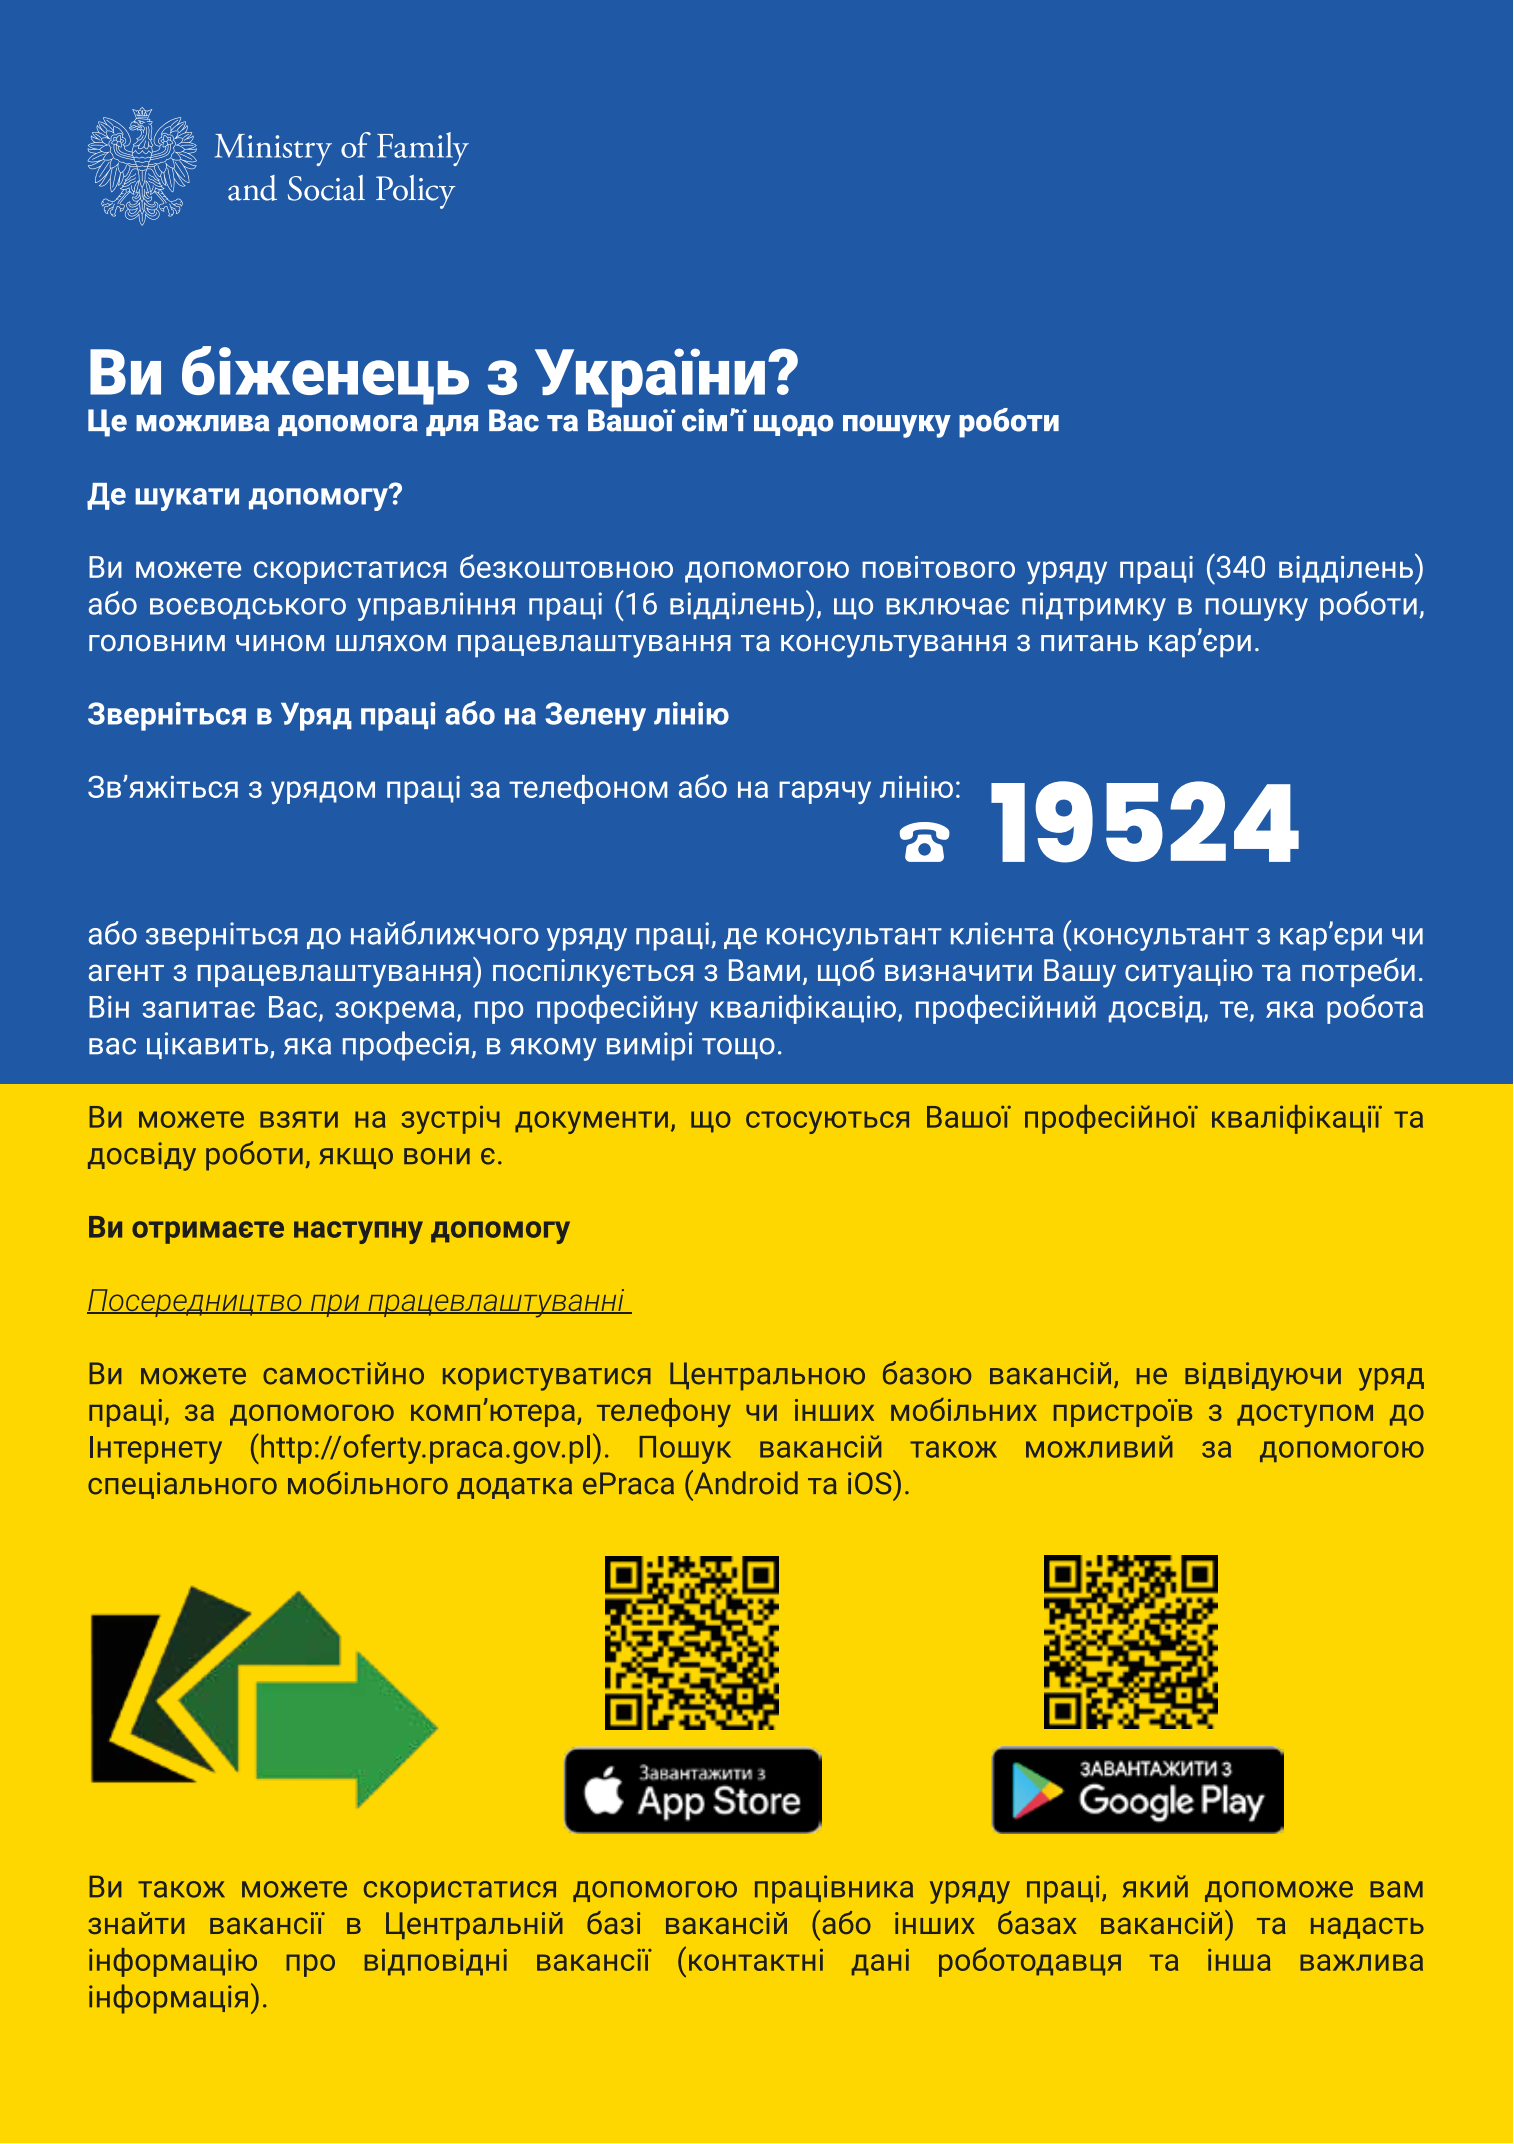 Pierwsza strona ulotki do obywateli Ukrainy w języku ukraińskim.